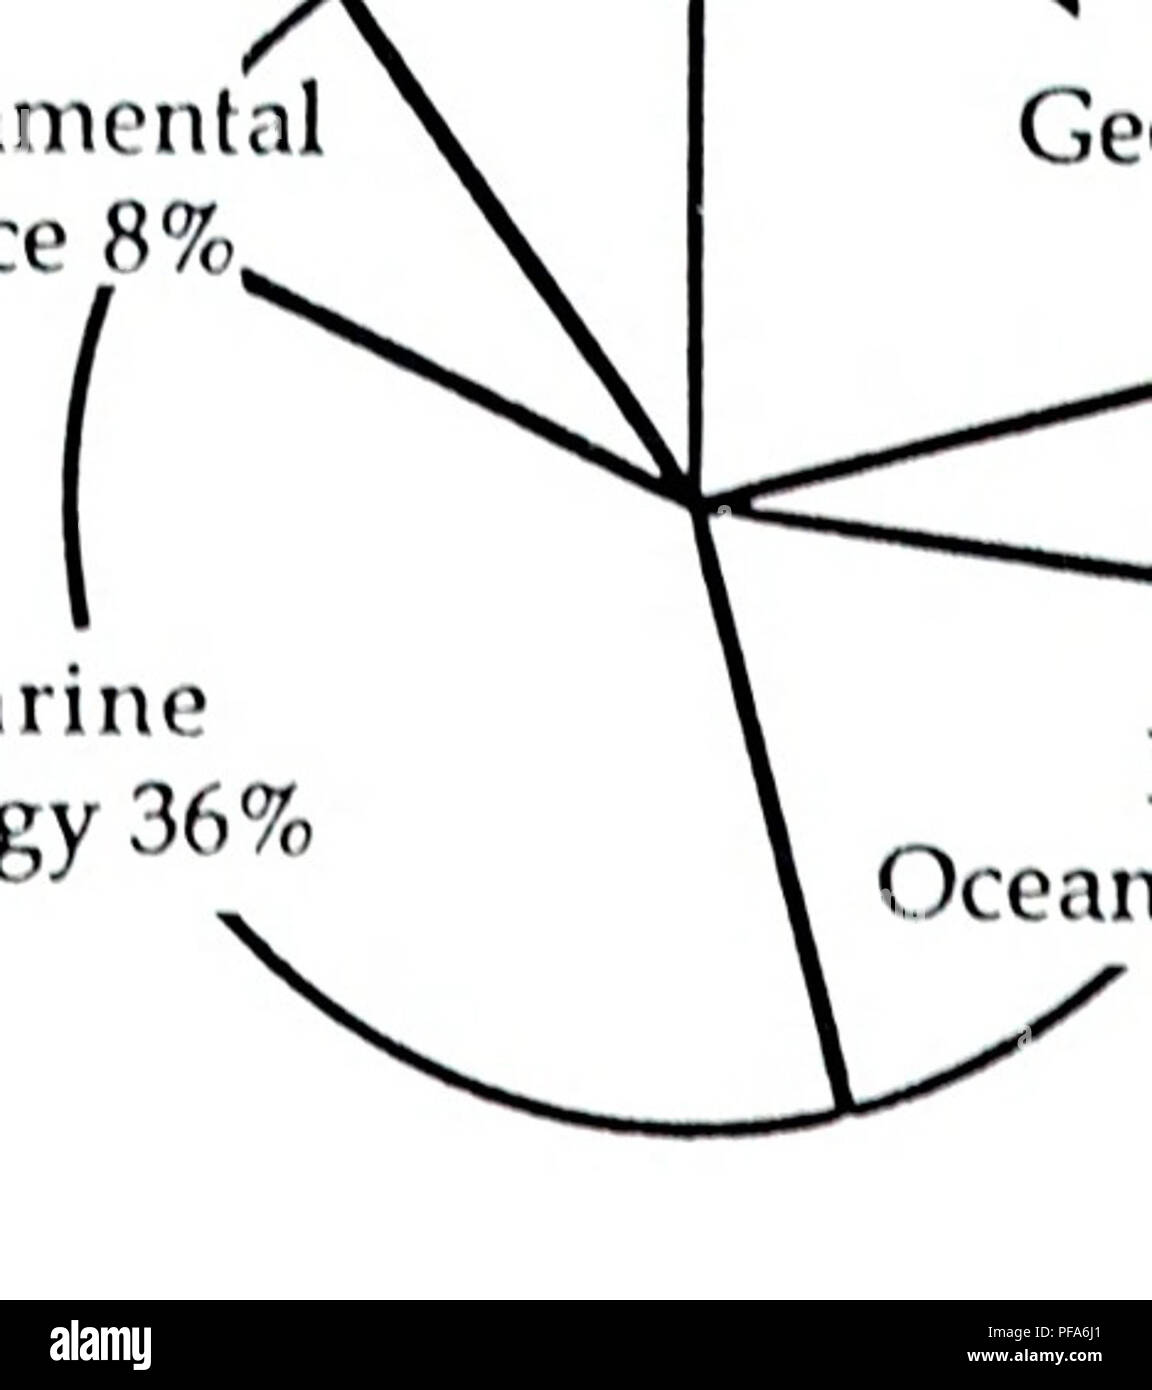 . L'évolution de la science et technologie. Les sciences marines ; l'océanographie. Grande Barrière de Corail J J J J L 79-'80 '81-'82 '83-'84 '85 '86 Pourcentage global de 50  % de la Grande Barrière de Corail. D'autres personnes ou plusieurs régions 32  % au nord-ouest de l'Australie 6 % 12 % du détroit de Bass. Veuillez noter que ces images sont extraites de la page numérisée des images qui peuvent avoir été retouchées numériquement pour plus de lisibilité - coloration et l'aspect de ces illustrations ne peut pas parfaitement ressembler à l'œuvre originale.. Watson, Mereen,1954- ; Baker, Joseph T., 1932- ; Australian Institute of Marine Science. Townsville, Qld.  : Aust Banque D'Images